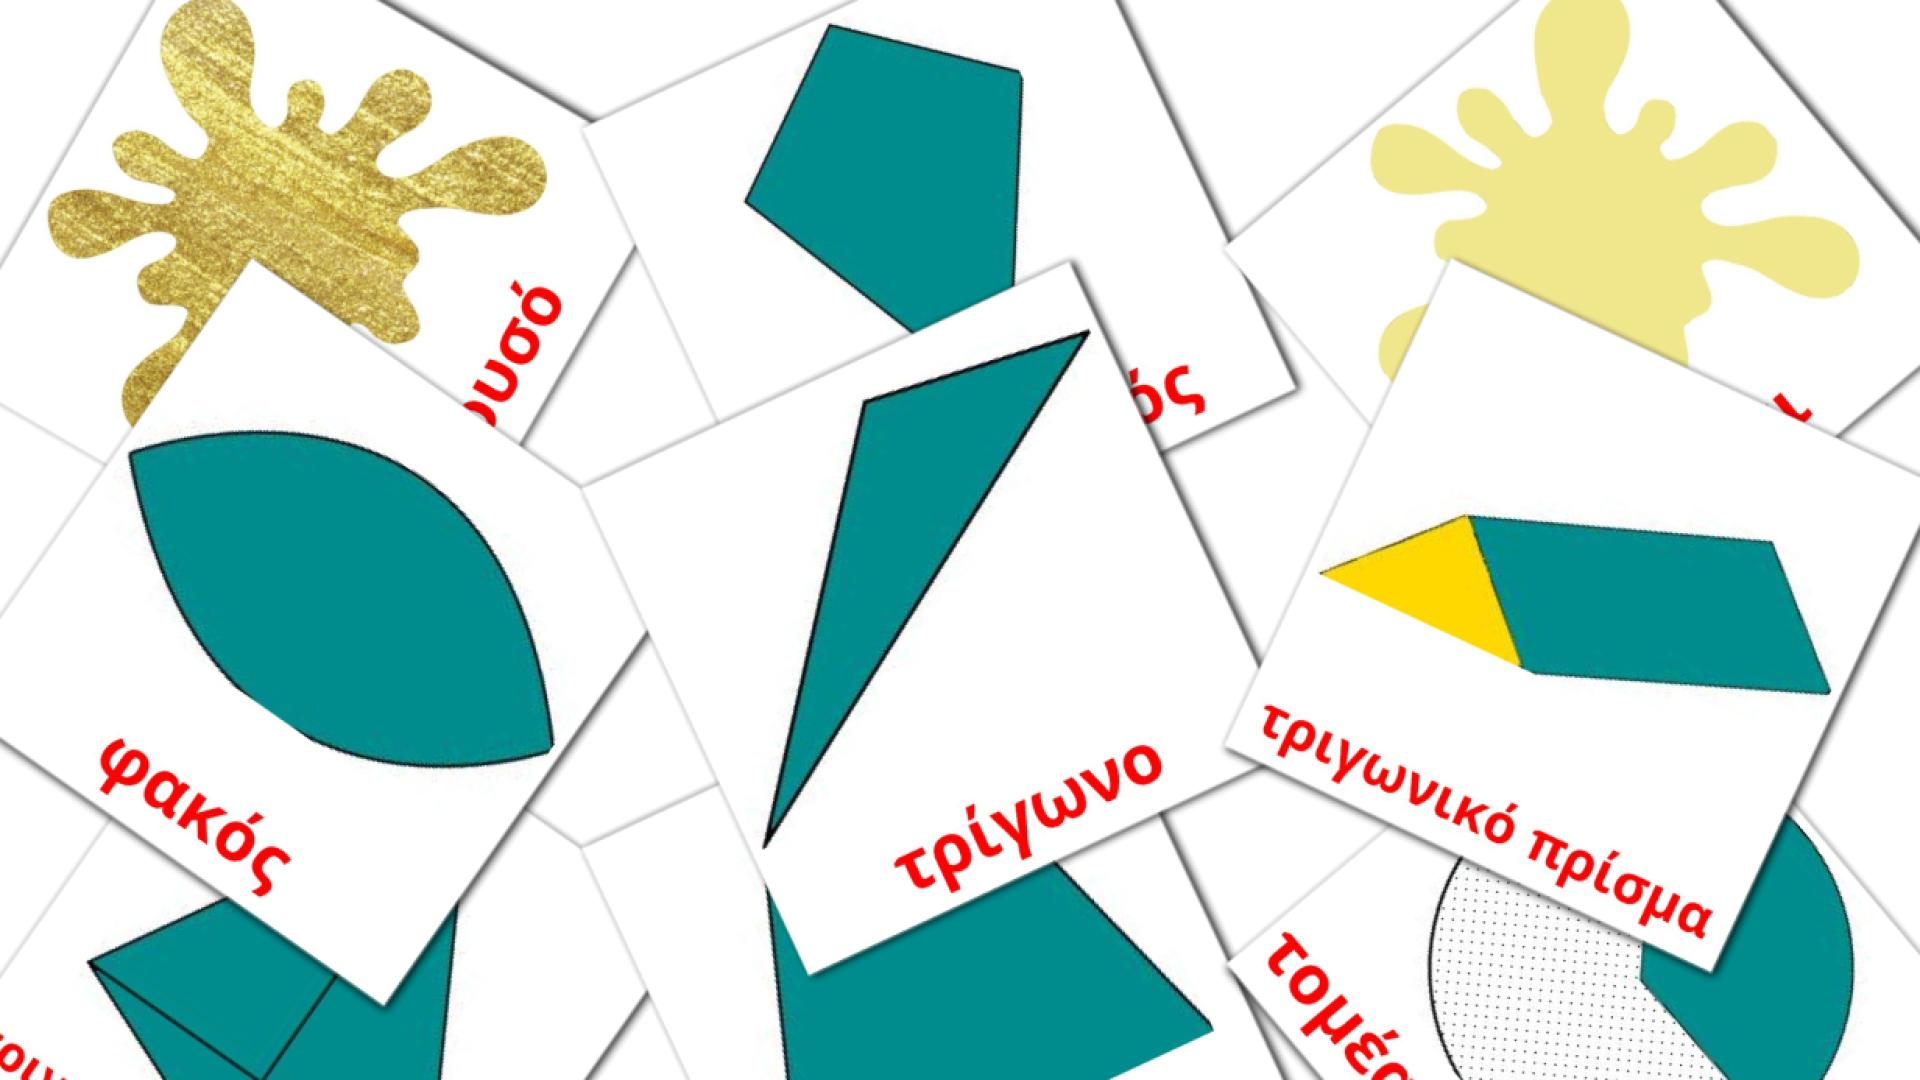 Χρώματα και σχήματα Flashcards di vocabolario greco